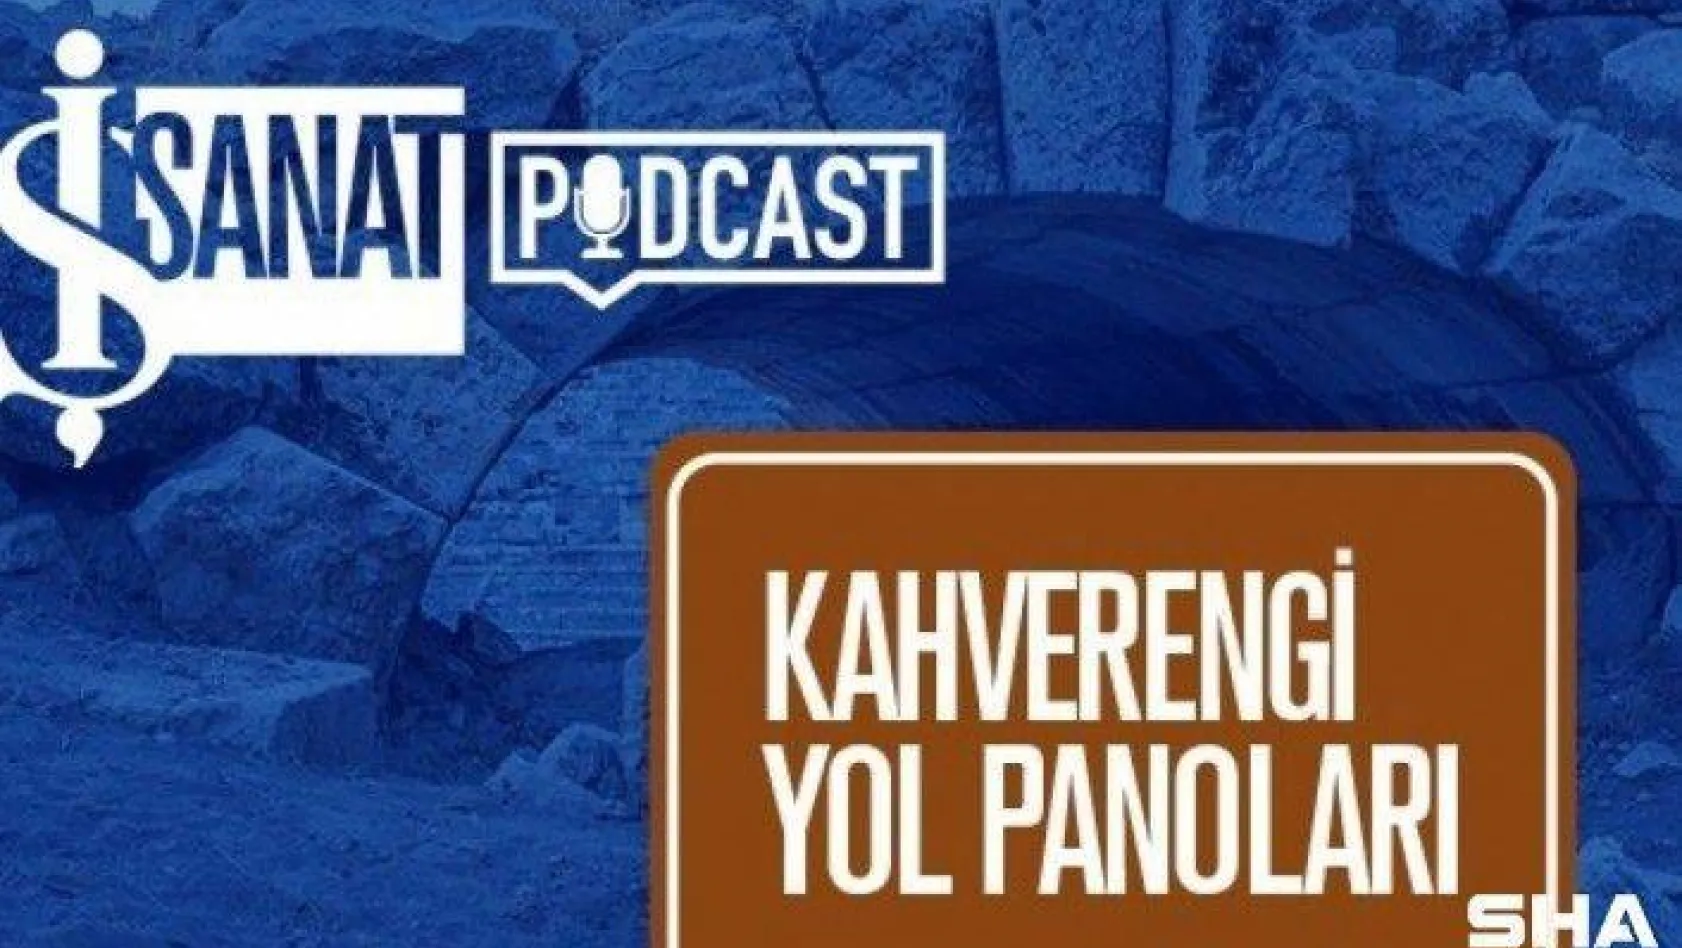 Podcast serisi 'Kahverengi Yol Panoları' dinleyicilerle buluşmaya devam ediyor